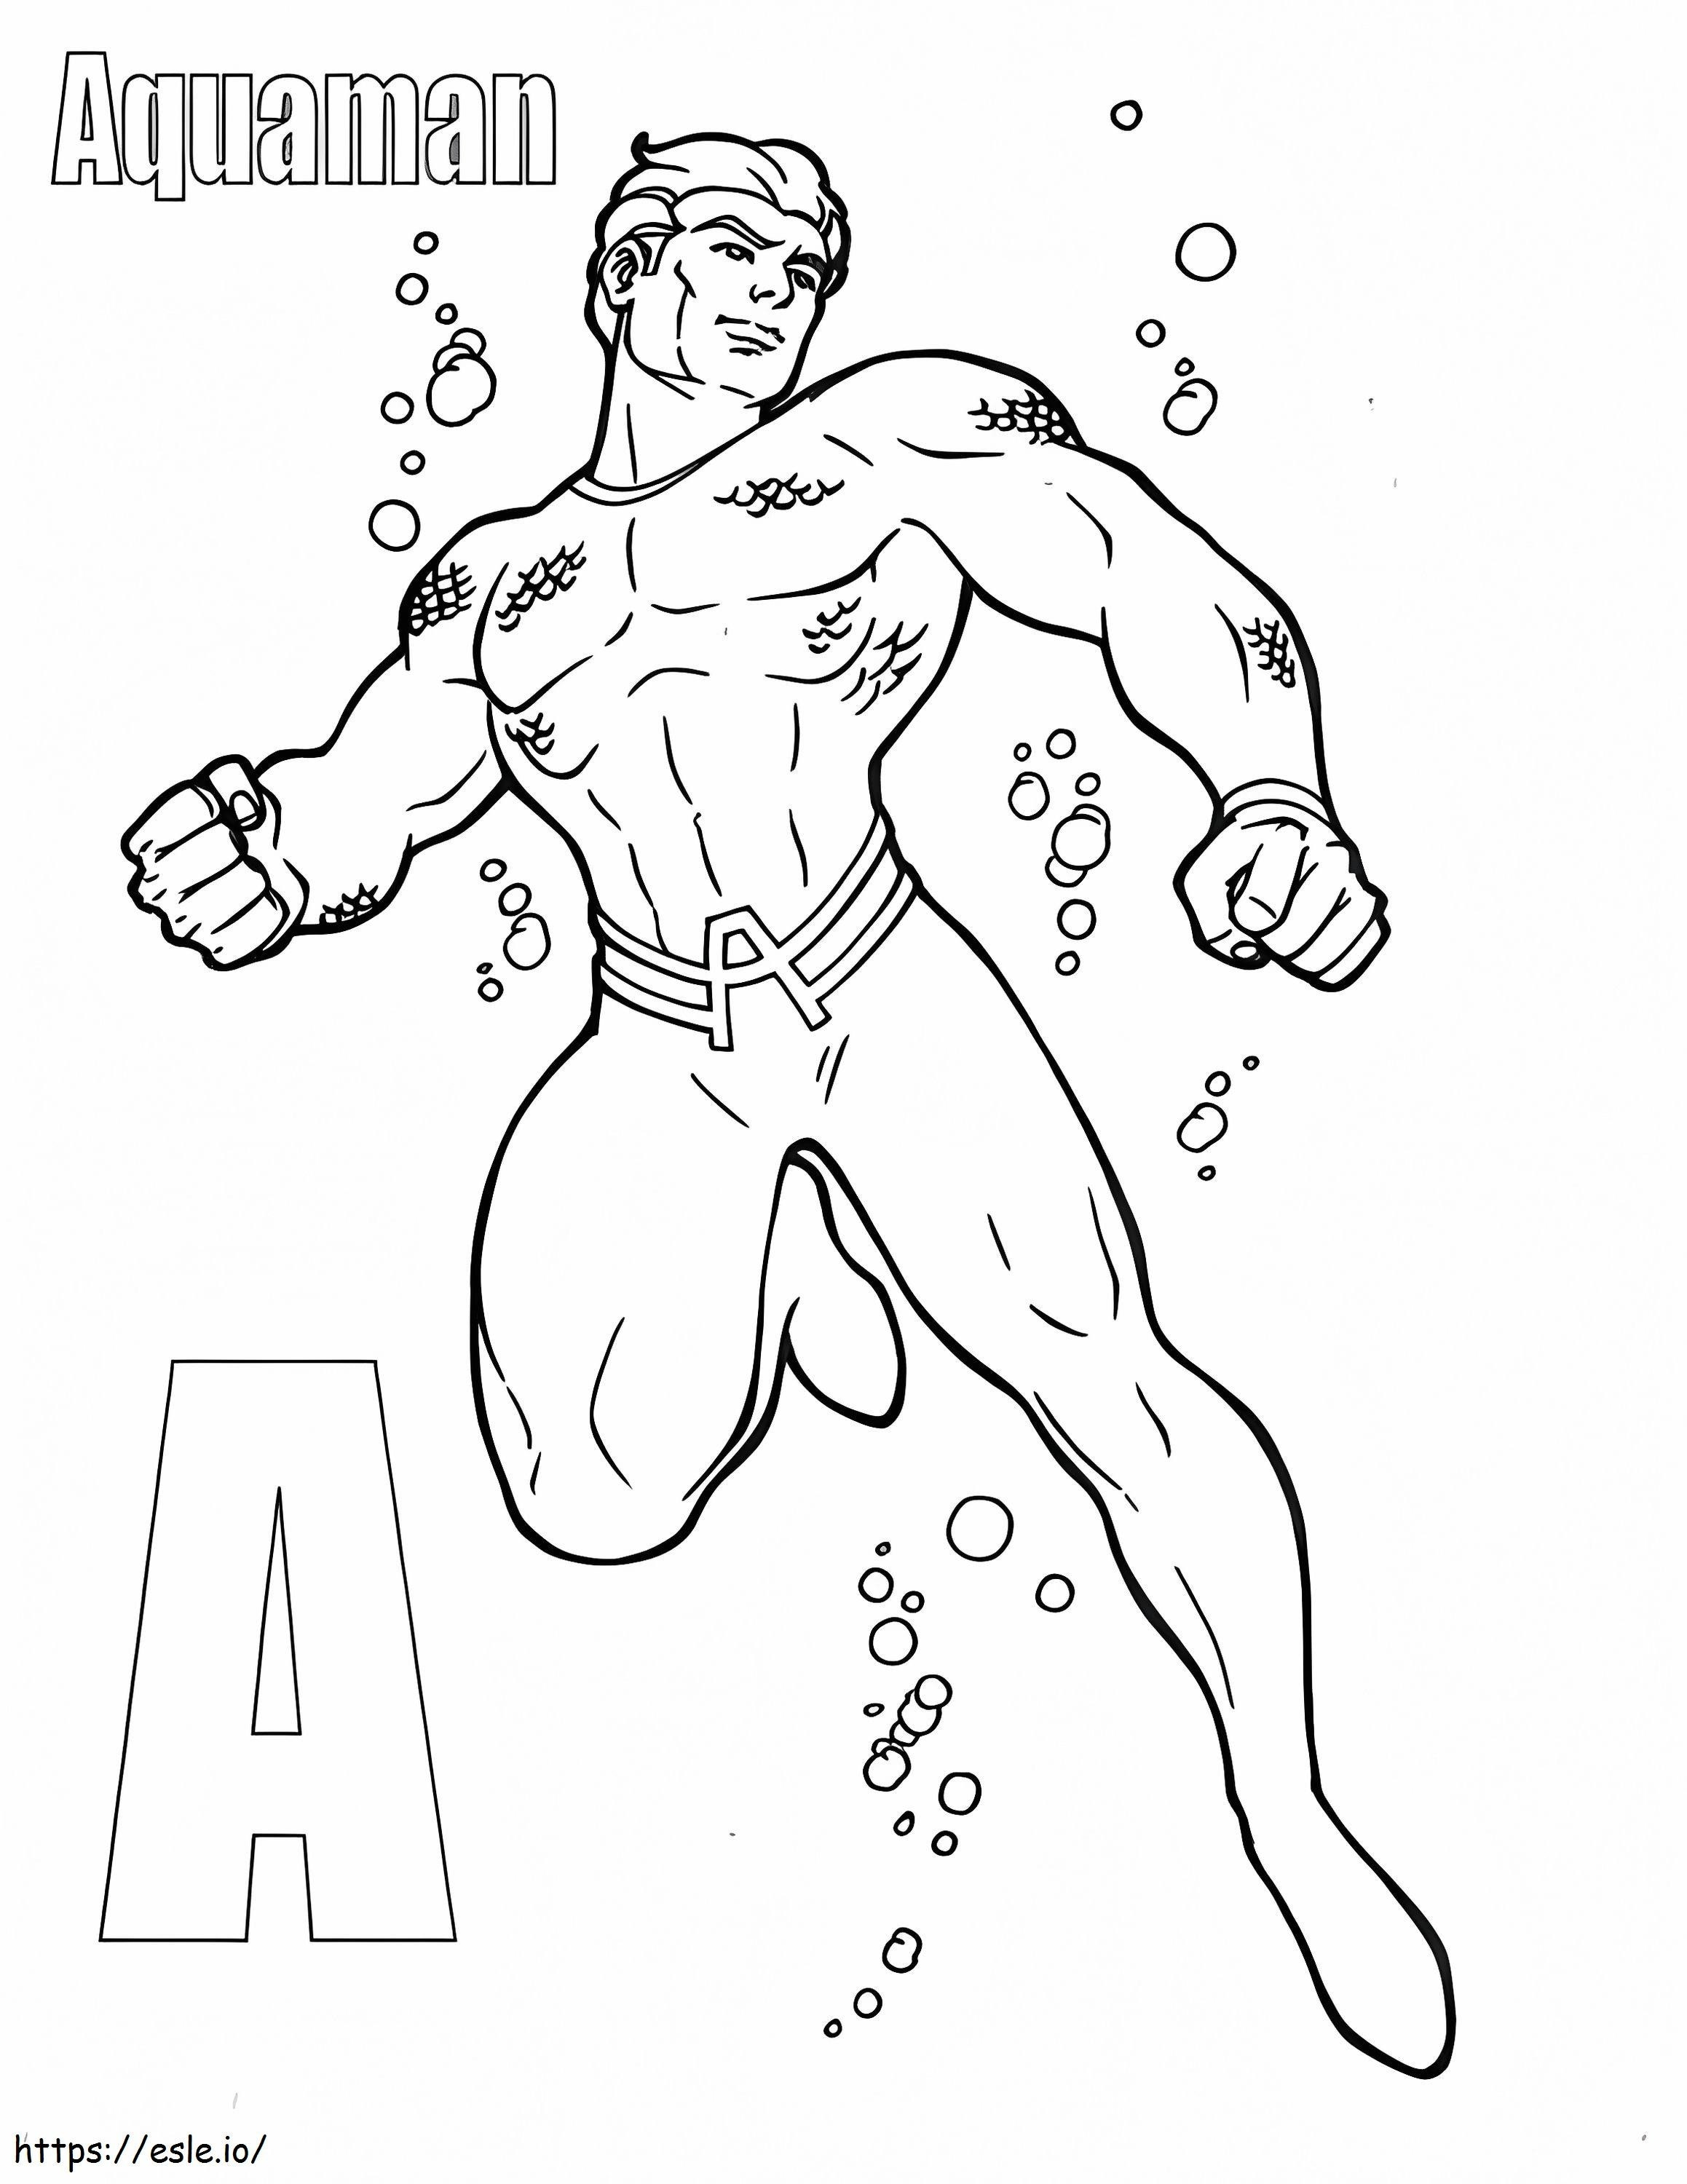 Buchstabe A und Aquaman ausmalbilder